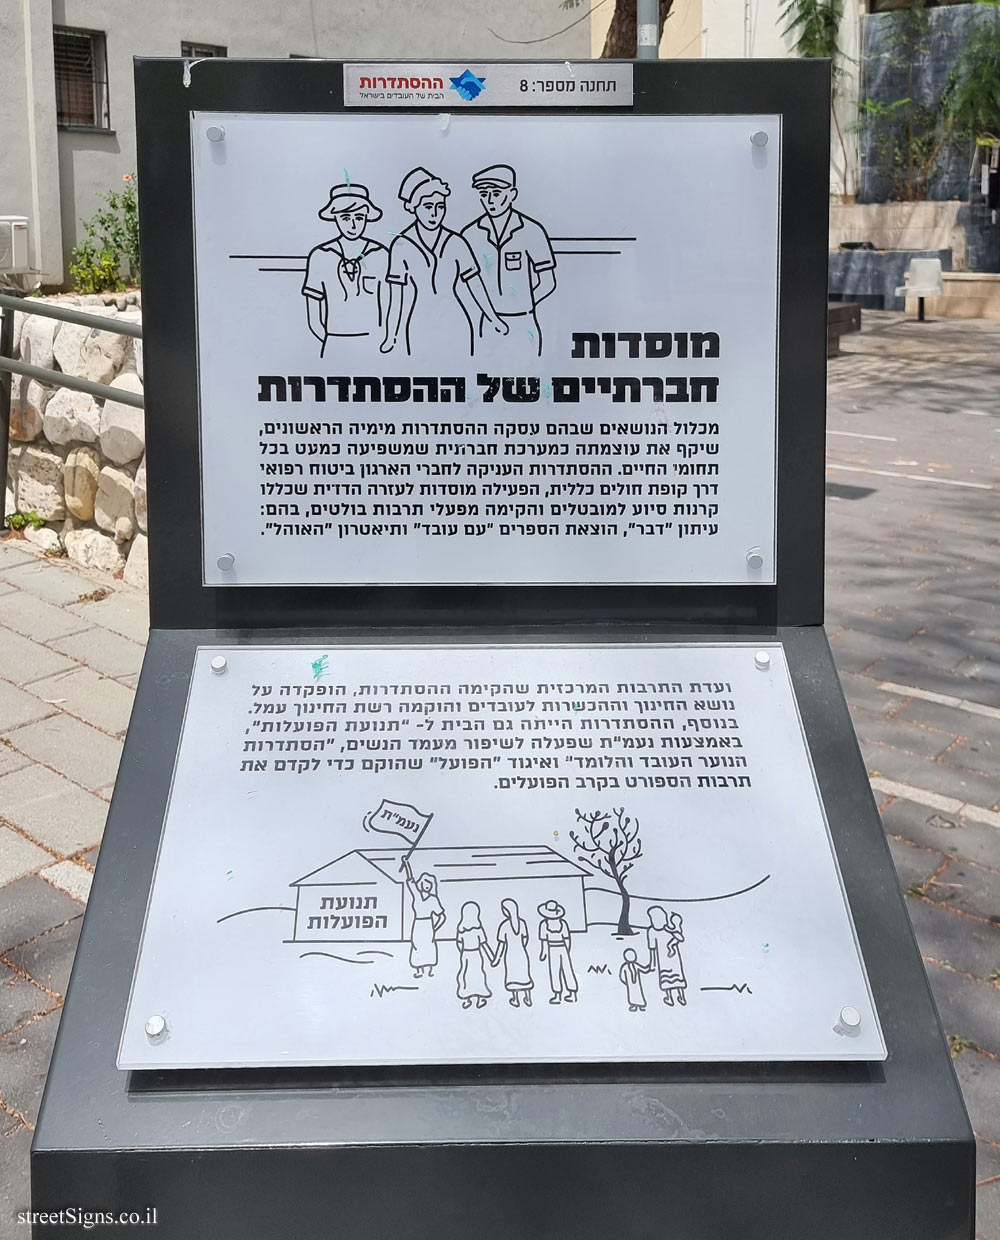 Rishon Lezion - Histadrut Garden - Milestones in the History of the Histadrut - Station 8